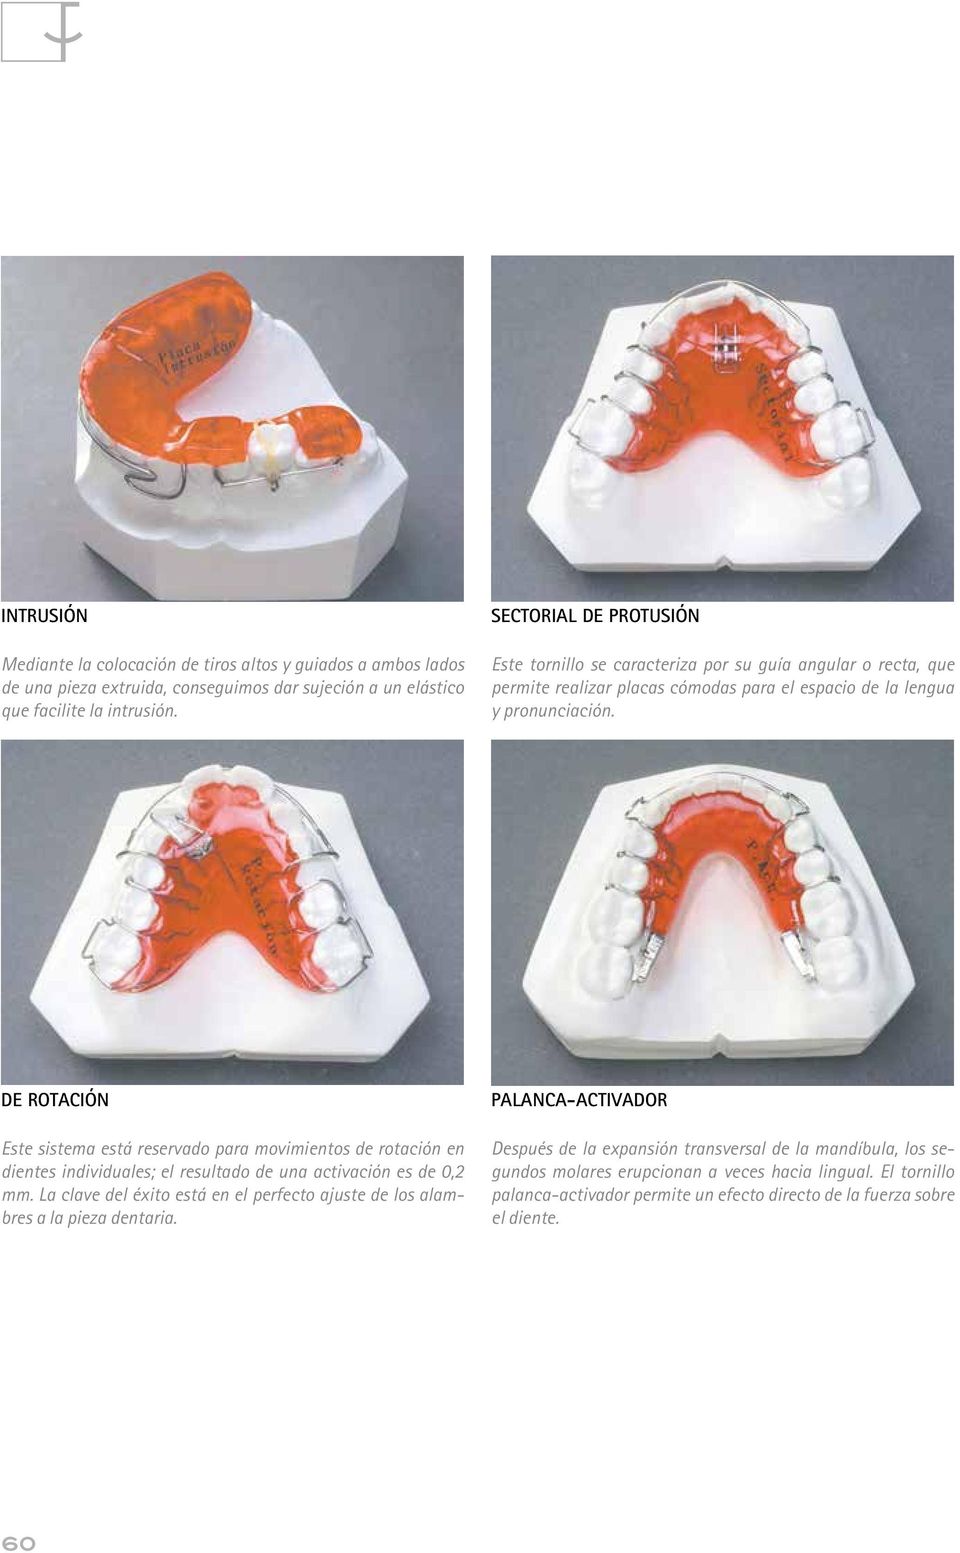 DE ROTACIÓN Este sistema está reservado para movimientos de rotación en dientes individuales; el resultado de una activación es de 0,2 mm.